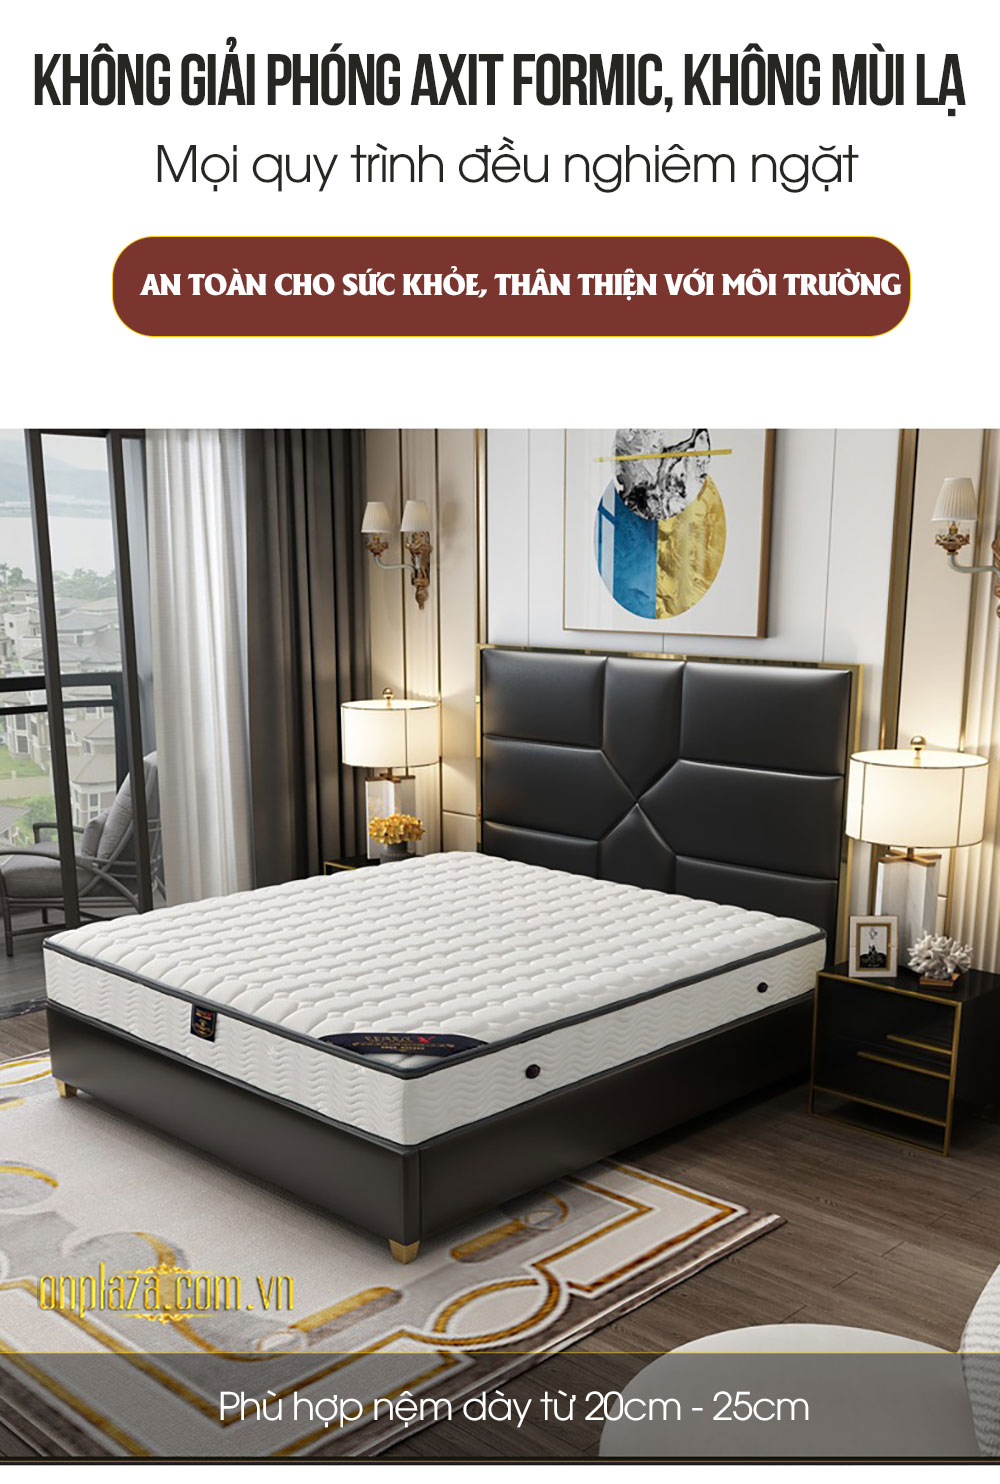 Bộ giường ngủ gỗ tự nhiên bọc da phối kim loại độc đáo và sang trọng G163